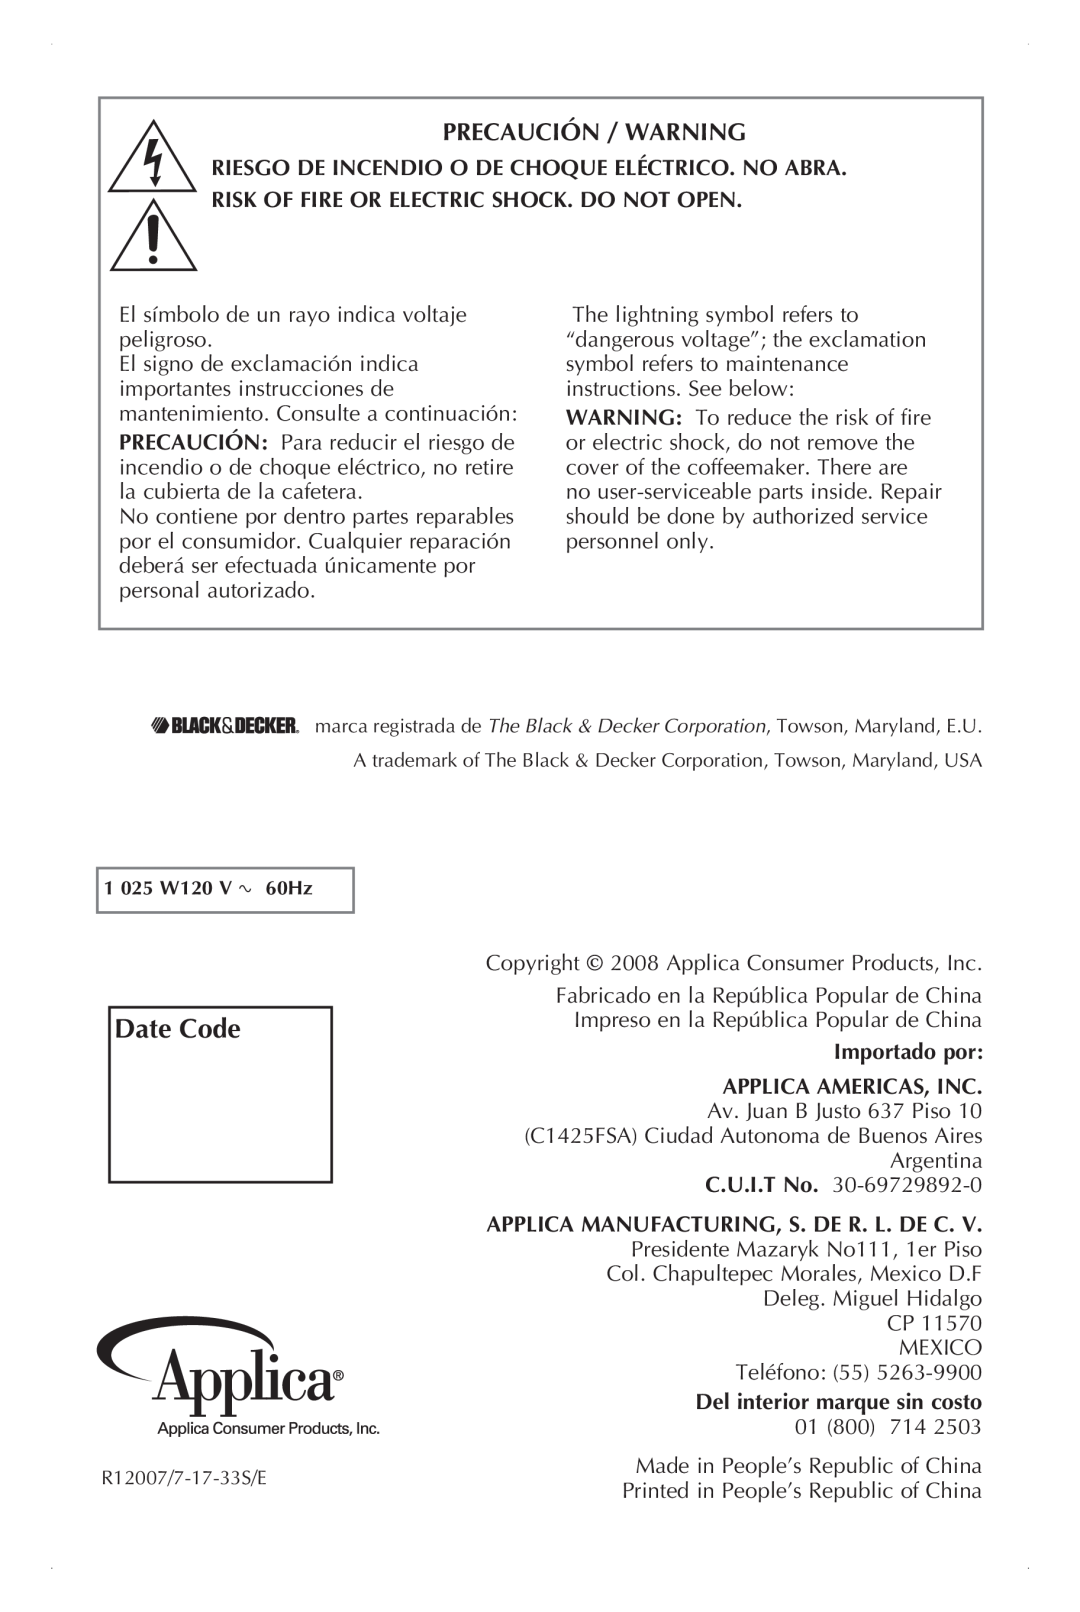 Black & Decker UCM200WG manual Date Code, Precaución / Warning, Importado por Applica Americas, Inc 